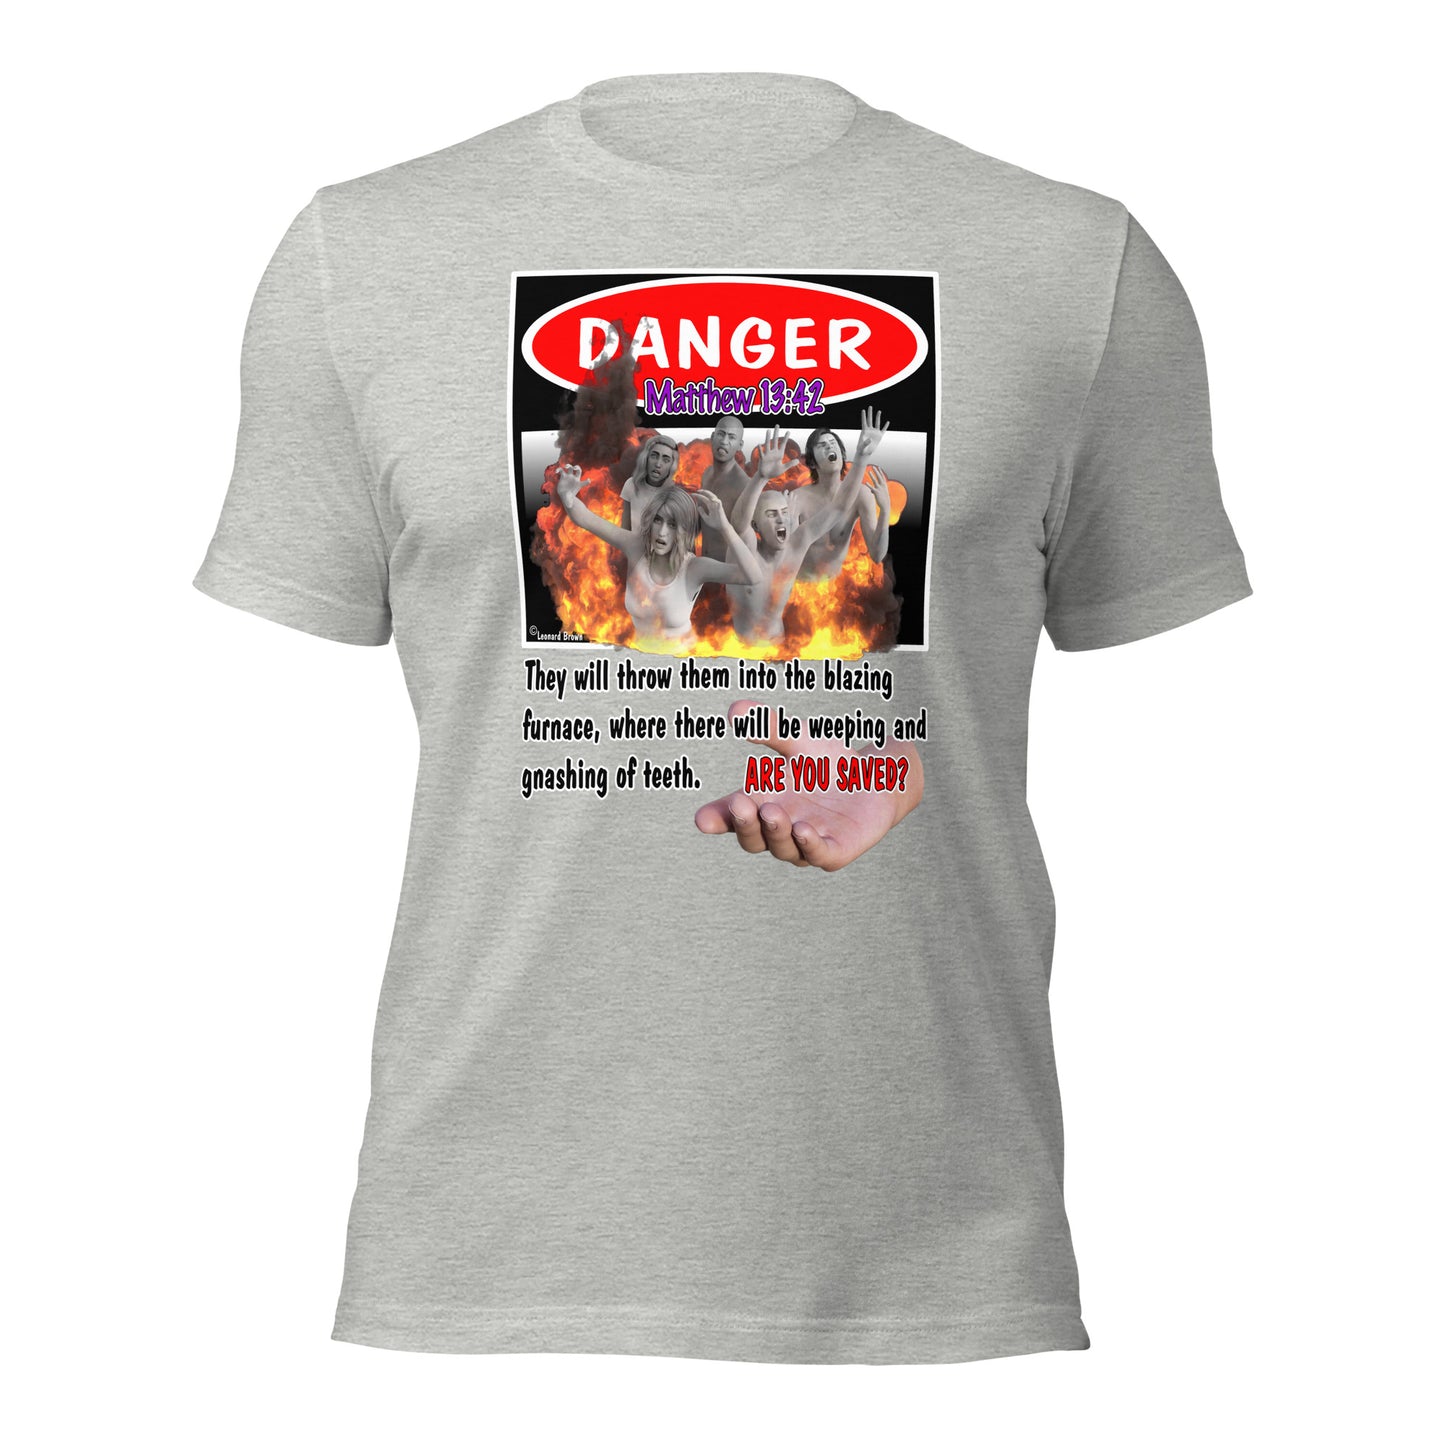 Danger t-shirt